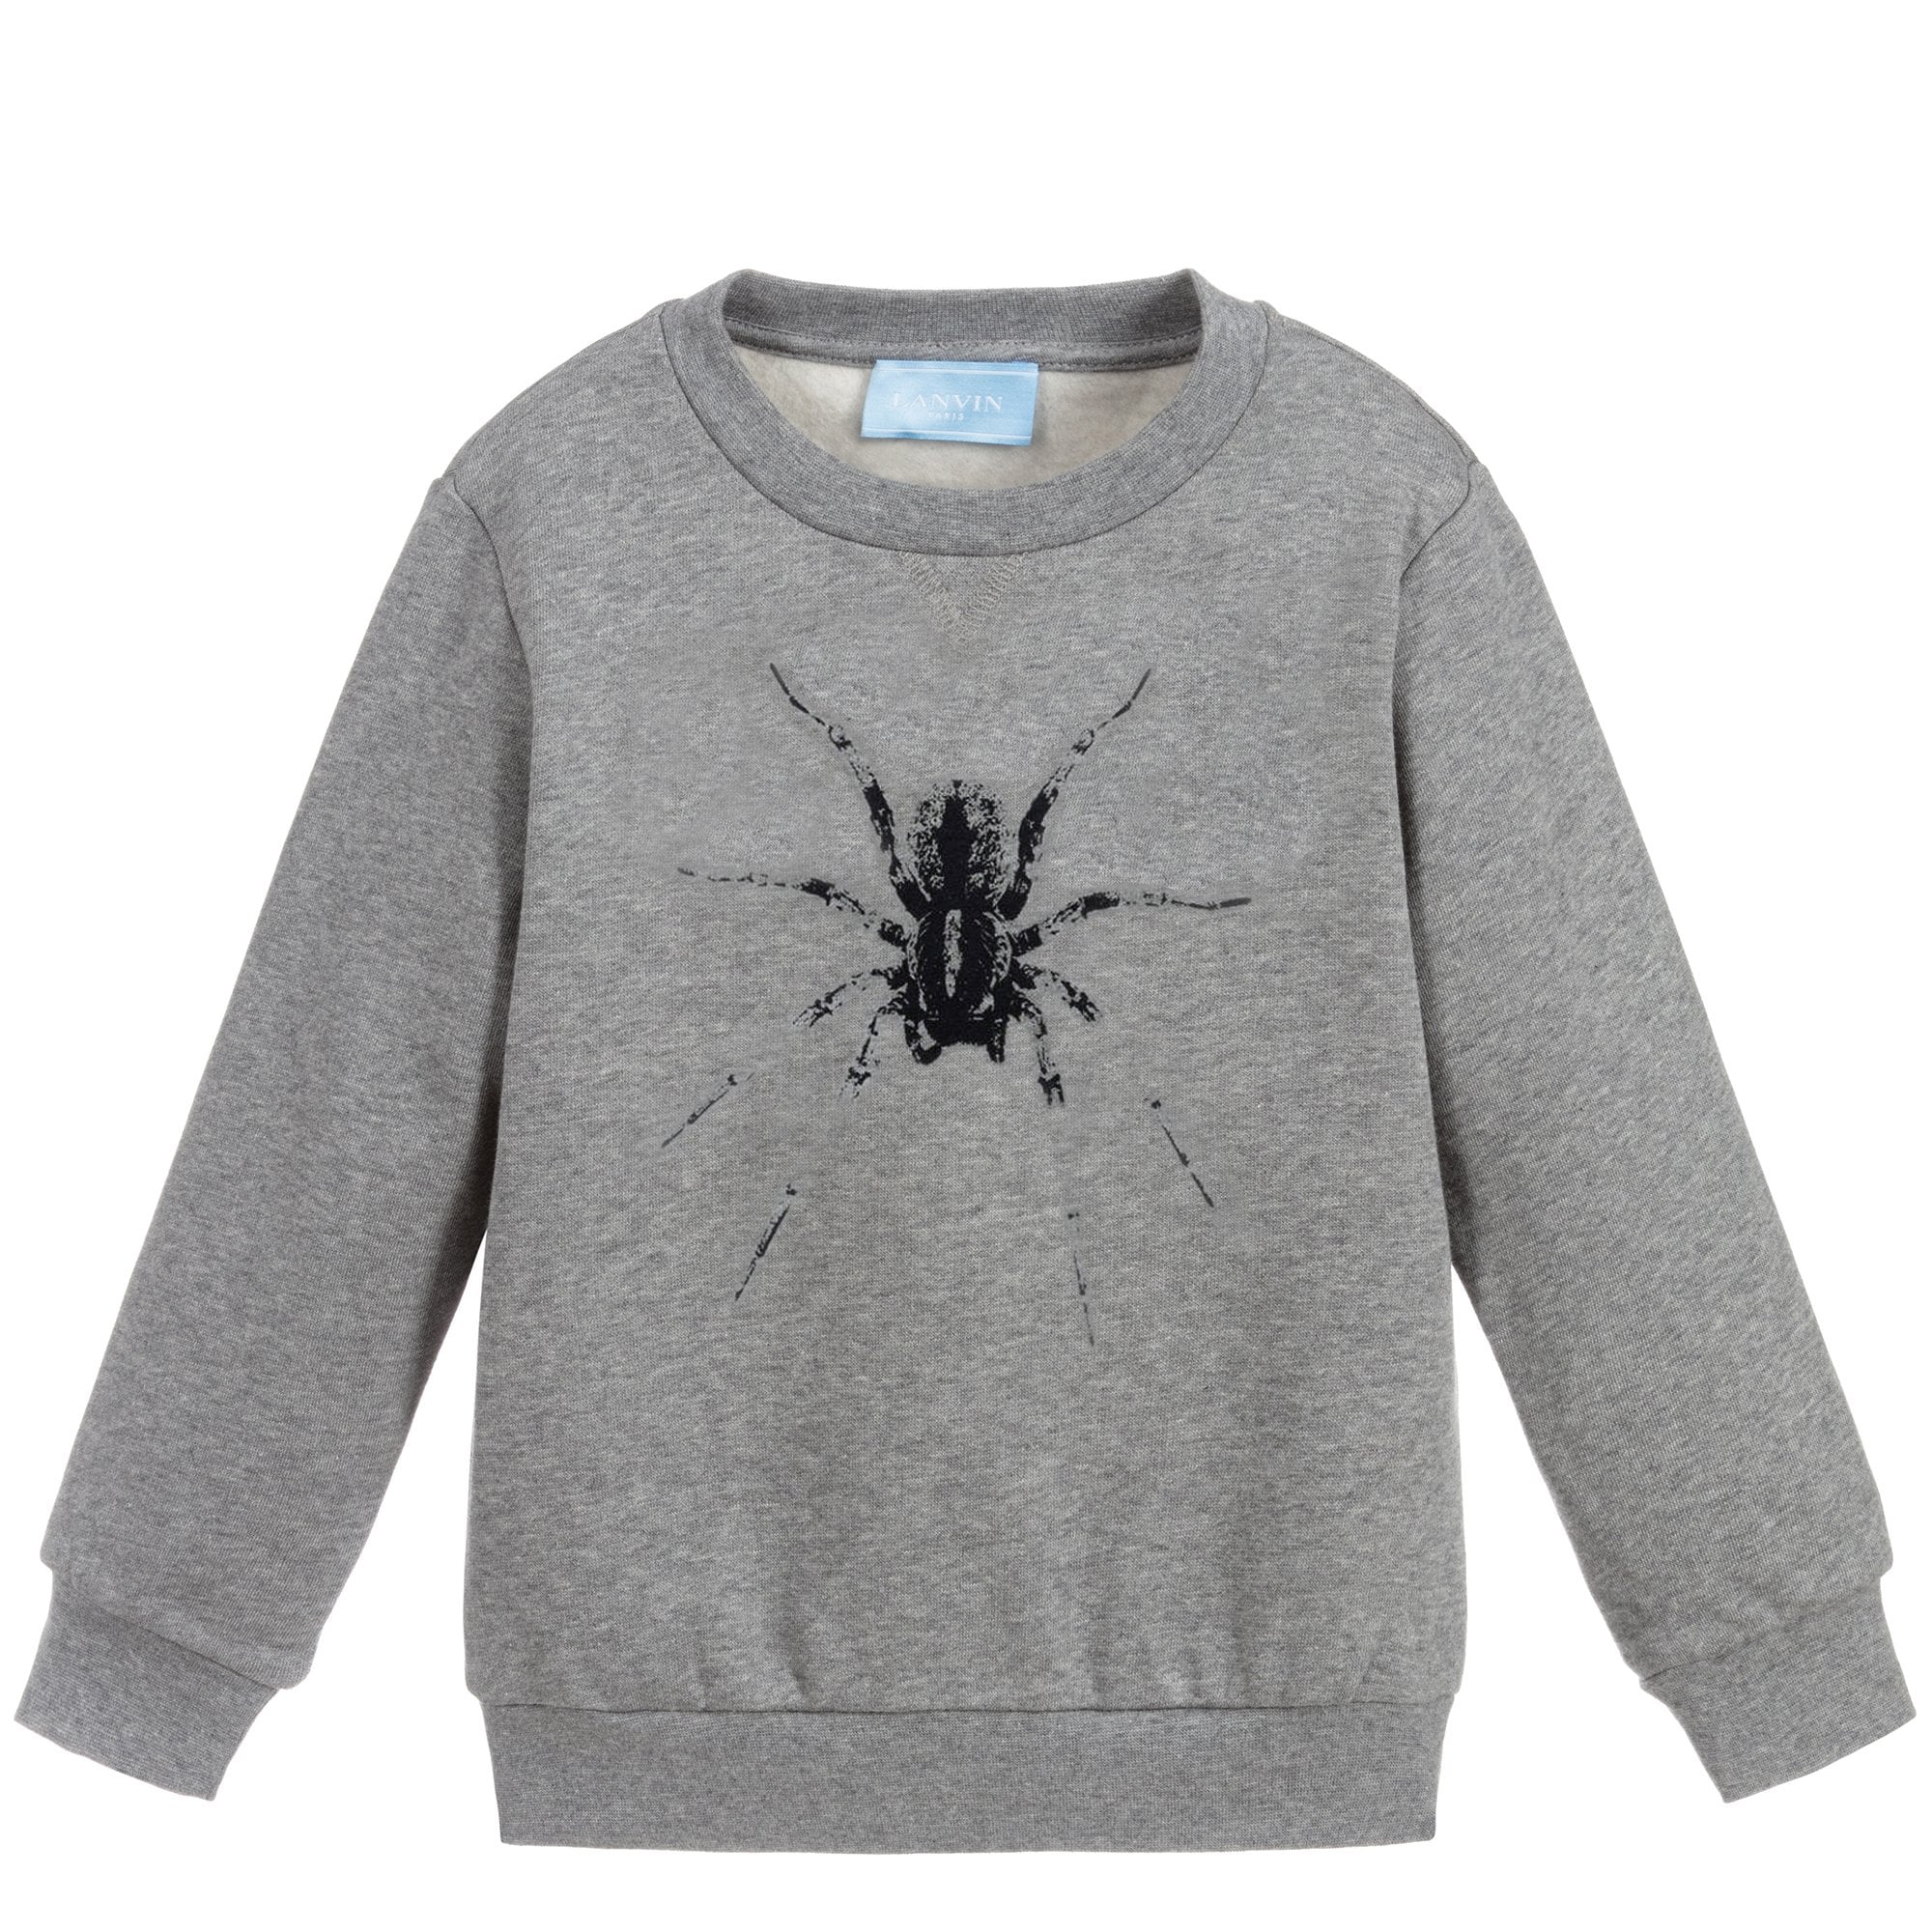 Lanvin Paris Boys Spider Sweatshirt Grey - GREY 10Y